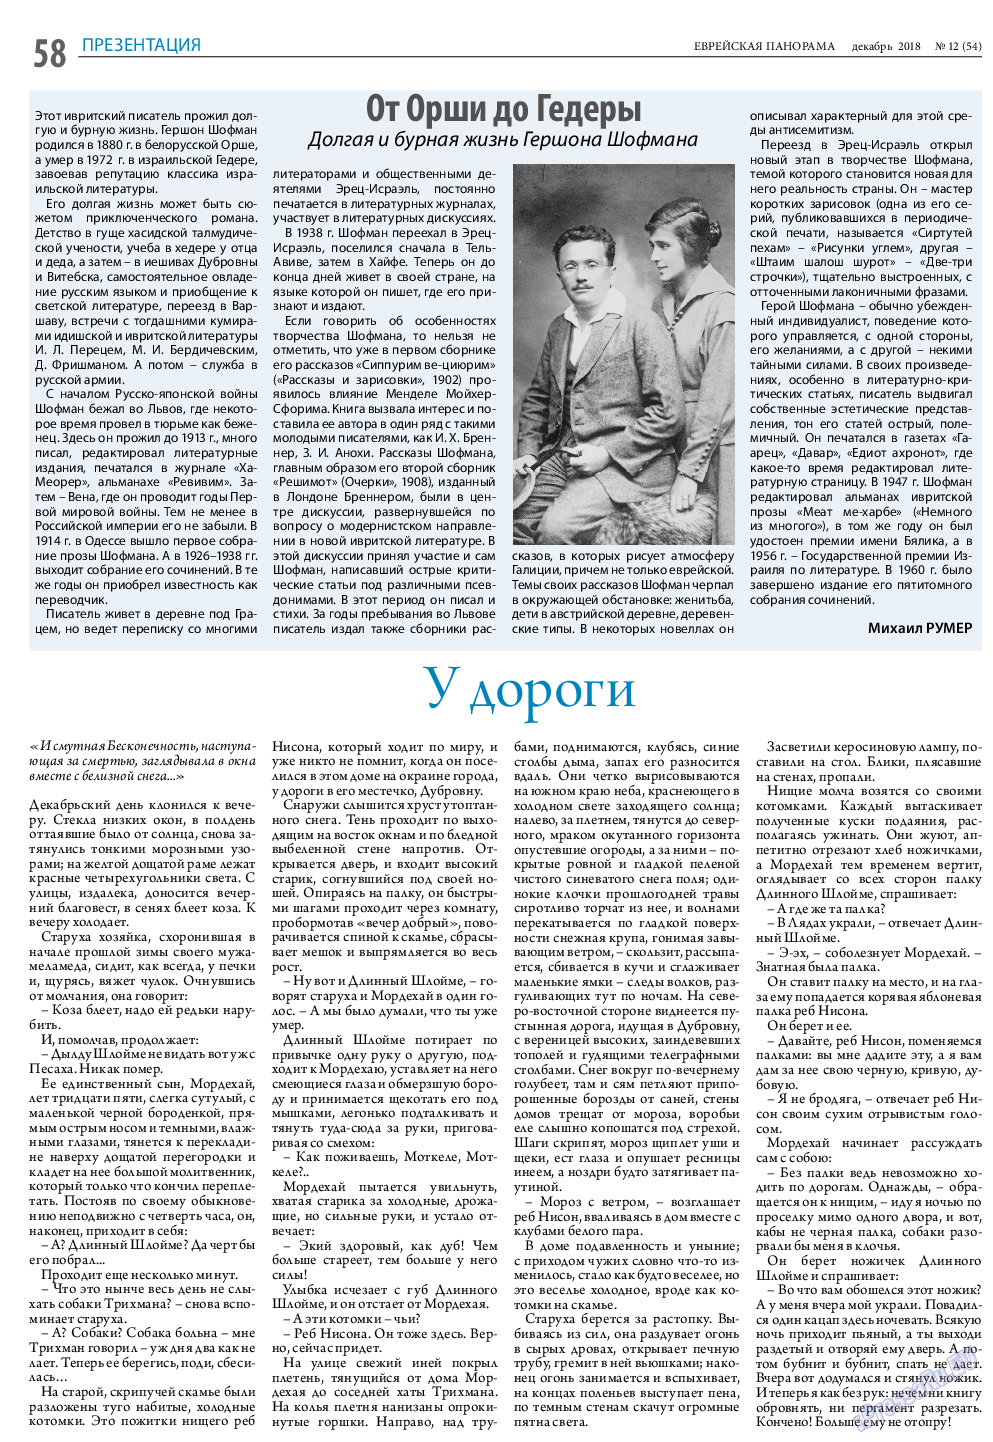 Еврейская панорама (газета). 2018 год, номер 12, стр. 58